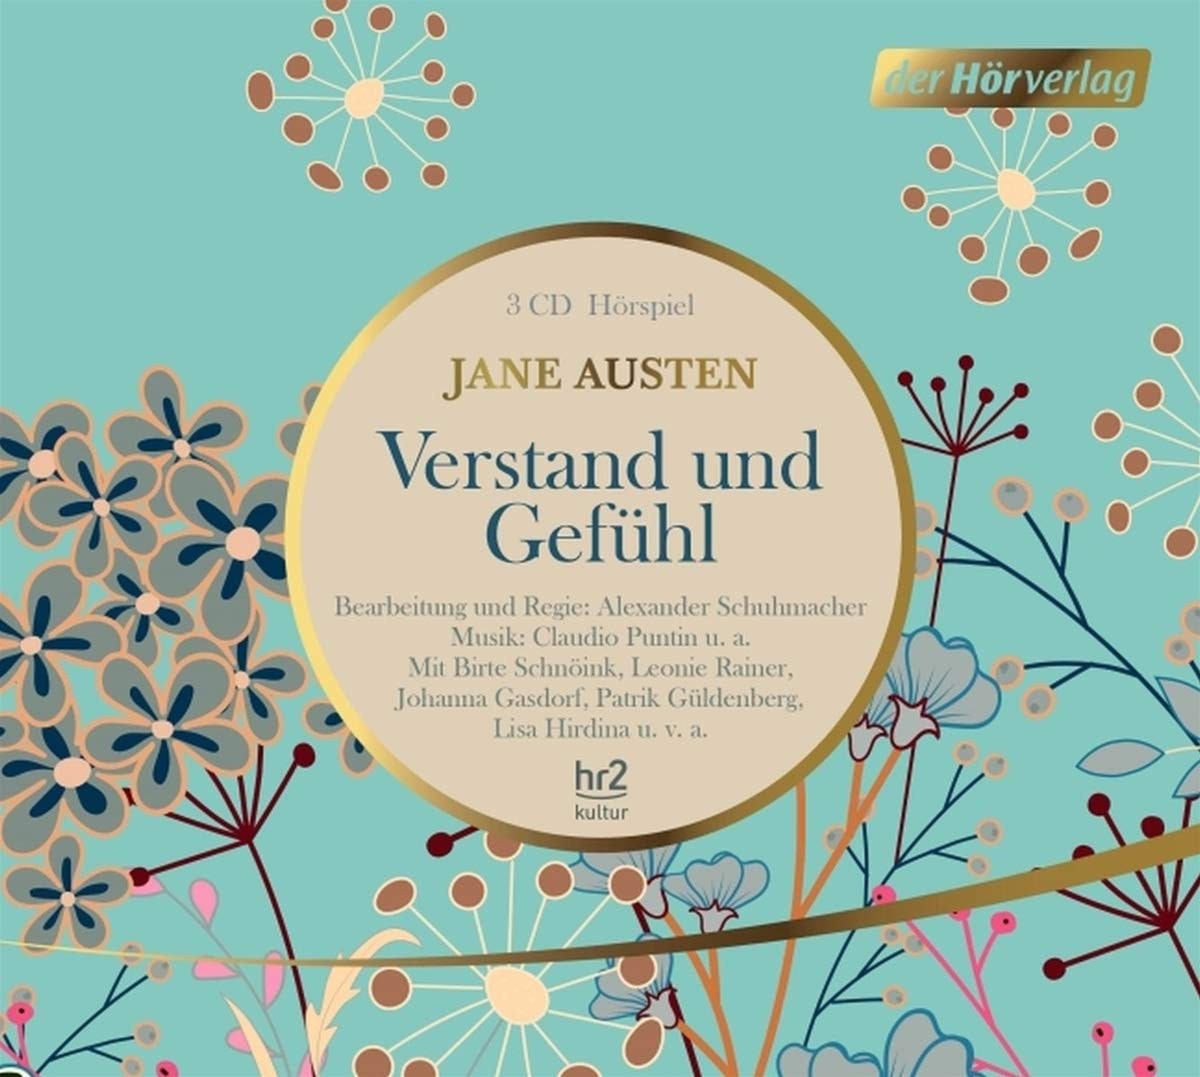 Jane Austen - Verstand und Gefühl: Das Hörspiel